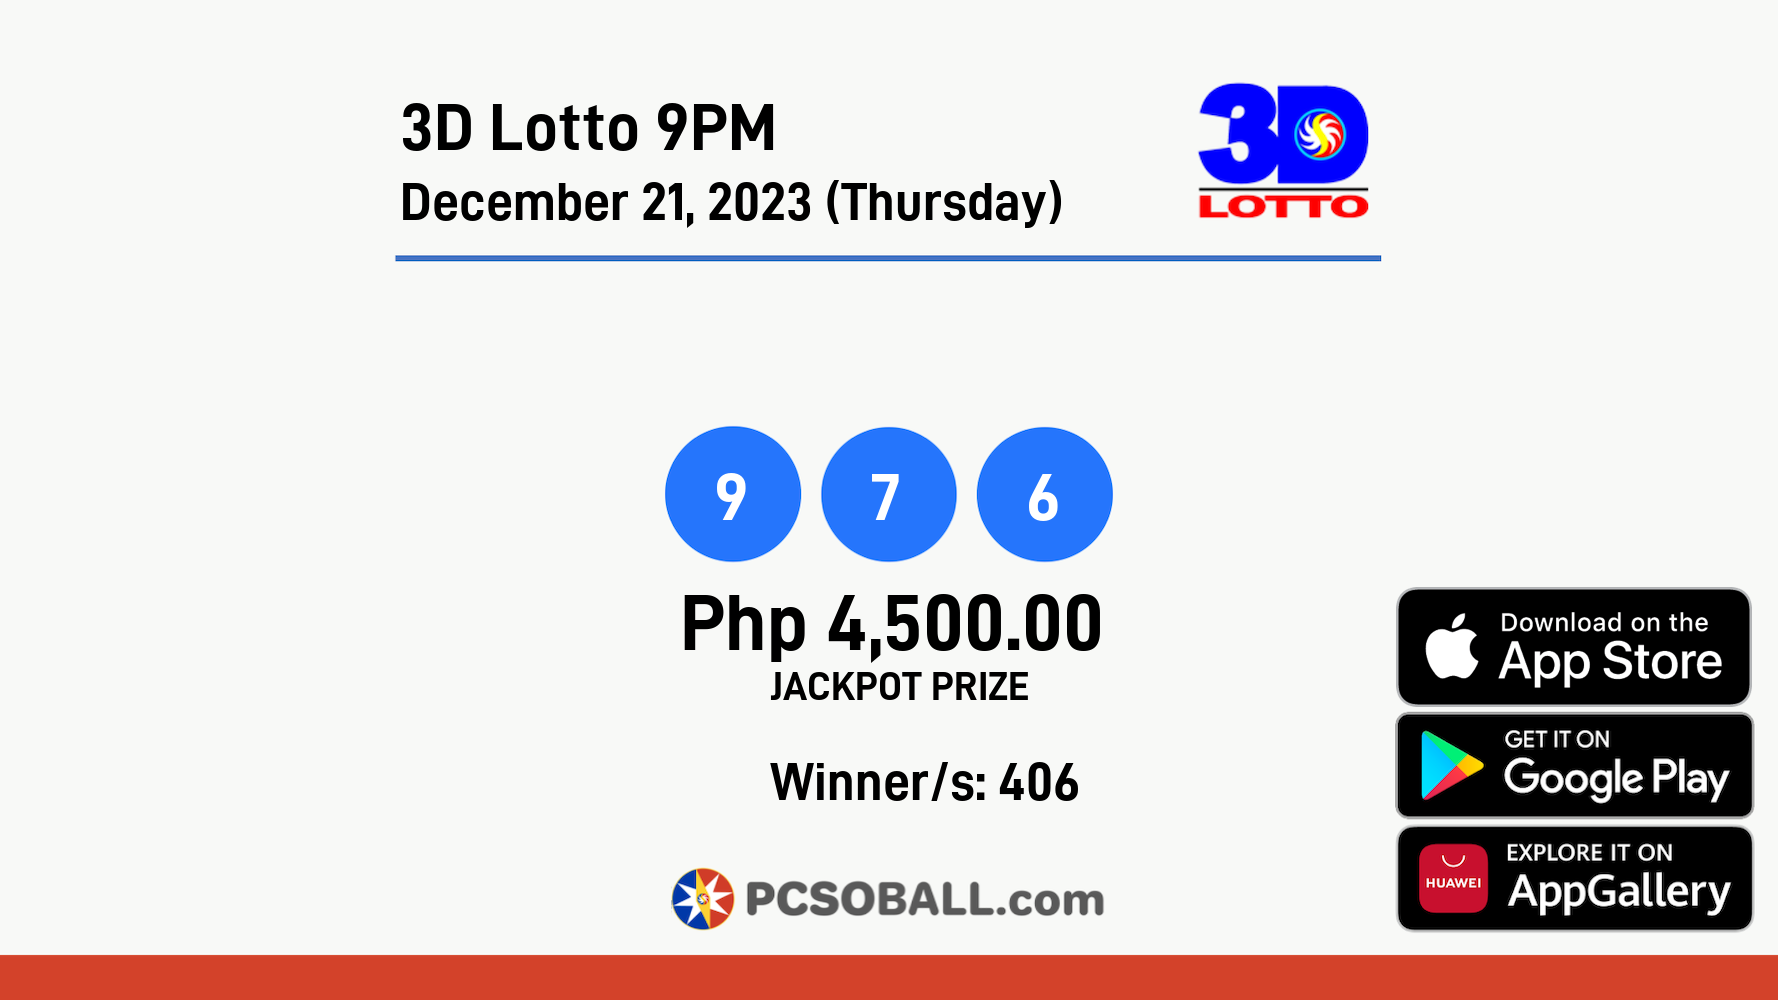 3D Lotto 9PM December 21, 2023 (Thursday) Result